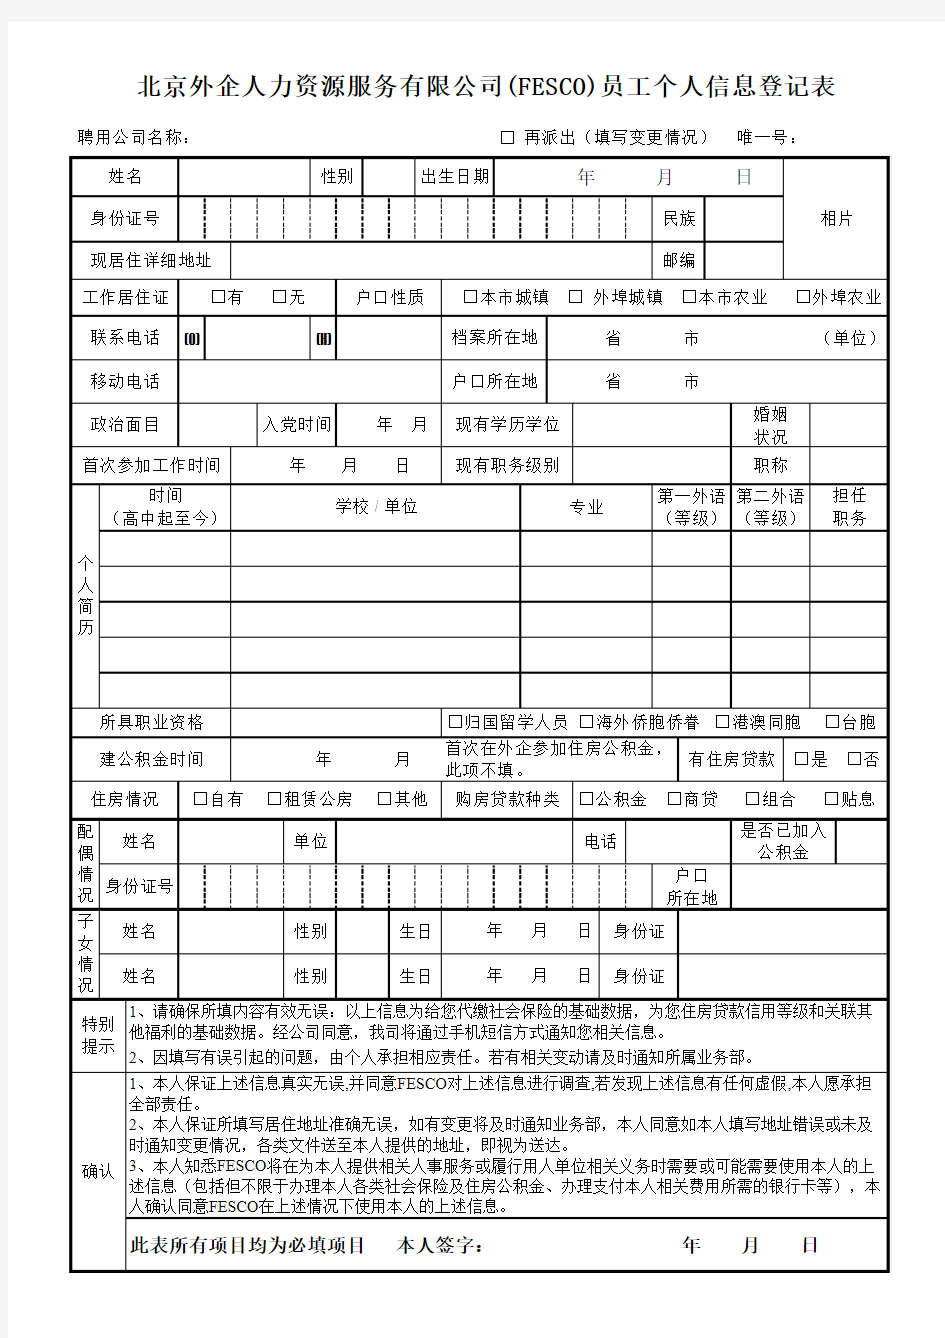 员工个人信息登记表 - 北京外企人力资源服务有限公司